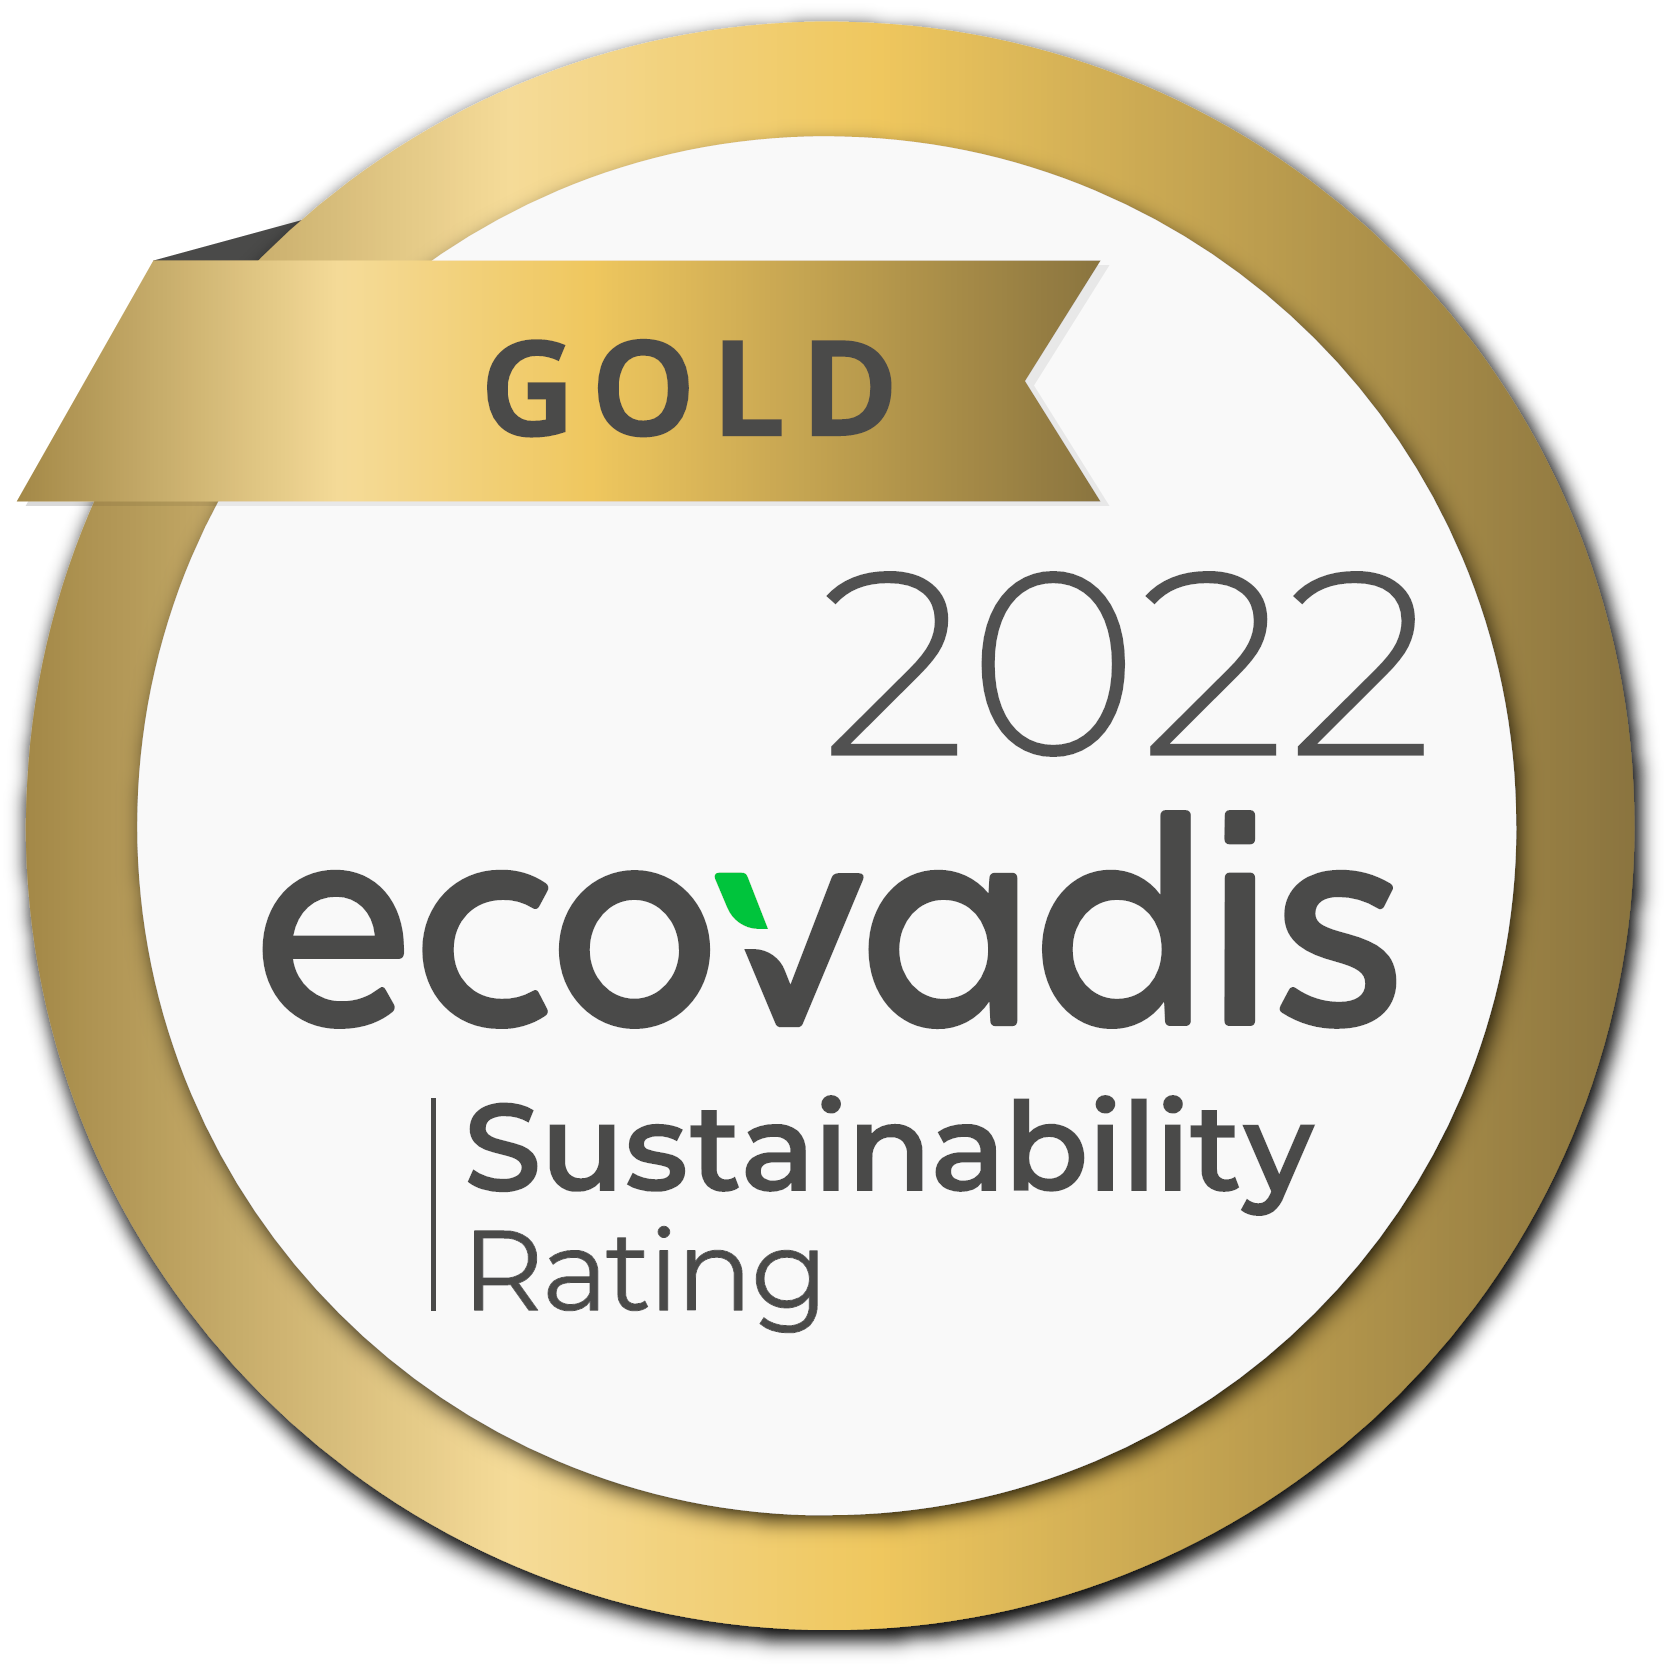 Ecovadis Gold sustainability rating award 2022